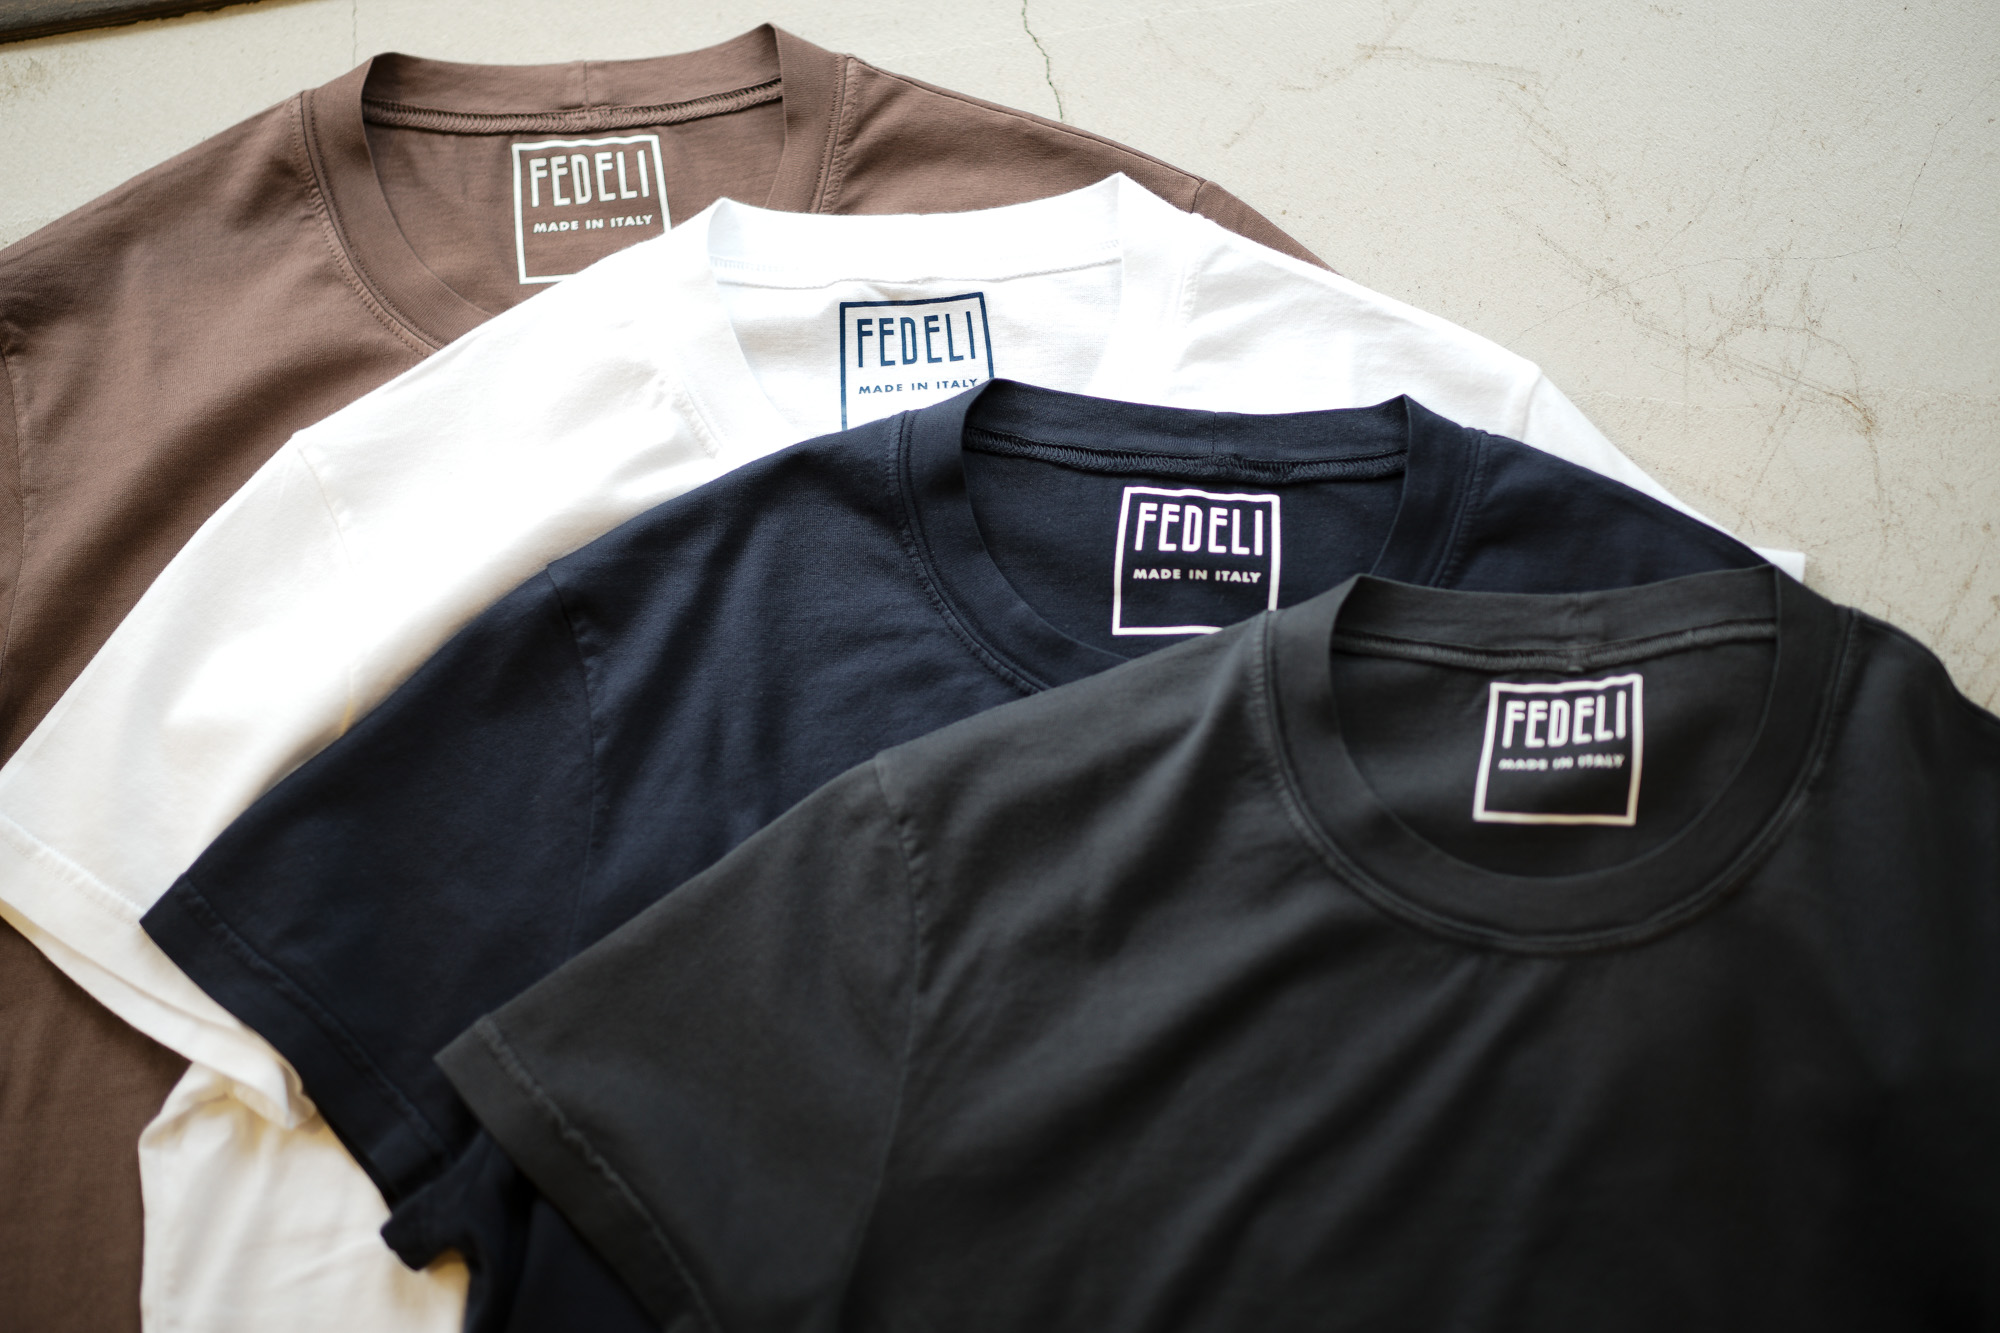 FEDELI (フェデーリ) Crew Neck T-shirt (クルーネック Tシャツ) ギザコットン Tシャツ BROWN (ブラウン・902),WHITE (ホワイト・41),NAVY (ネイビー・626),BLACK (ブラック・36) made in italy (イタリア製) 2019 春夏新作 愛知 名古屋 altoediritto アルトエデリット